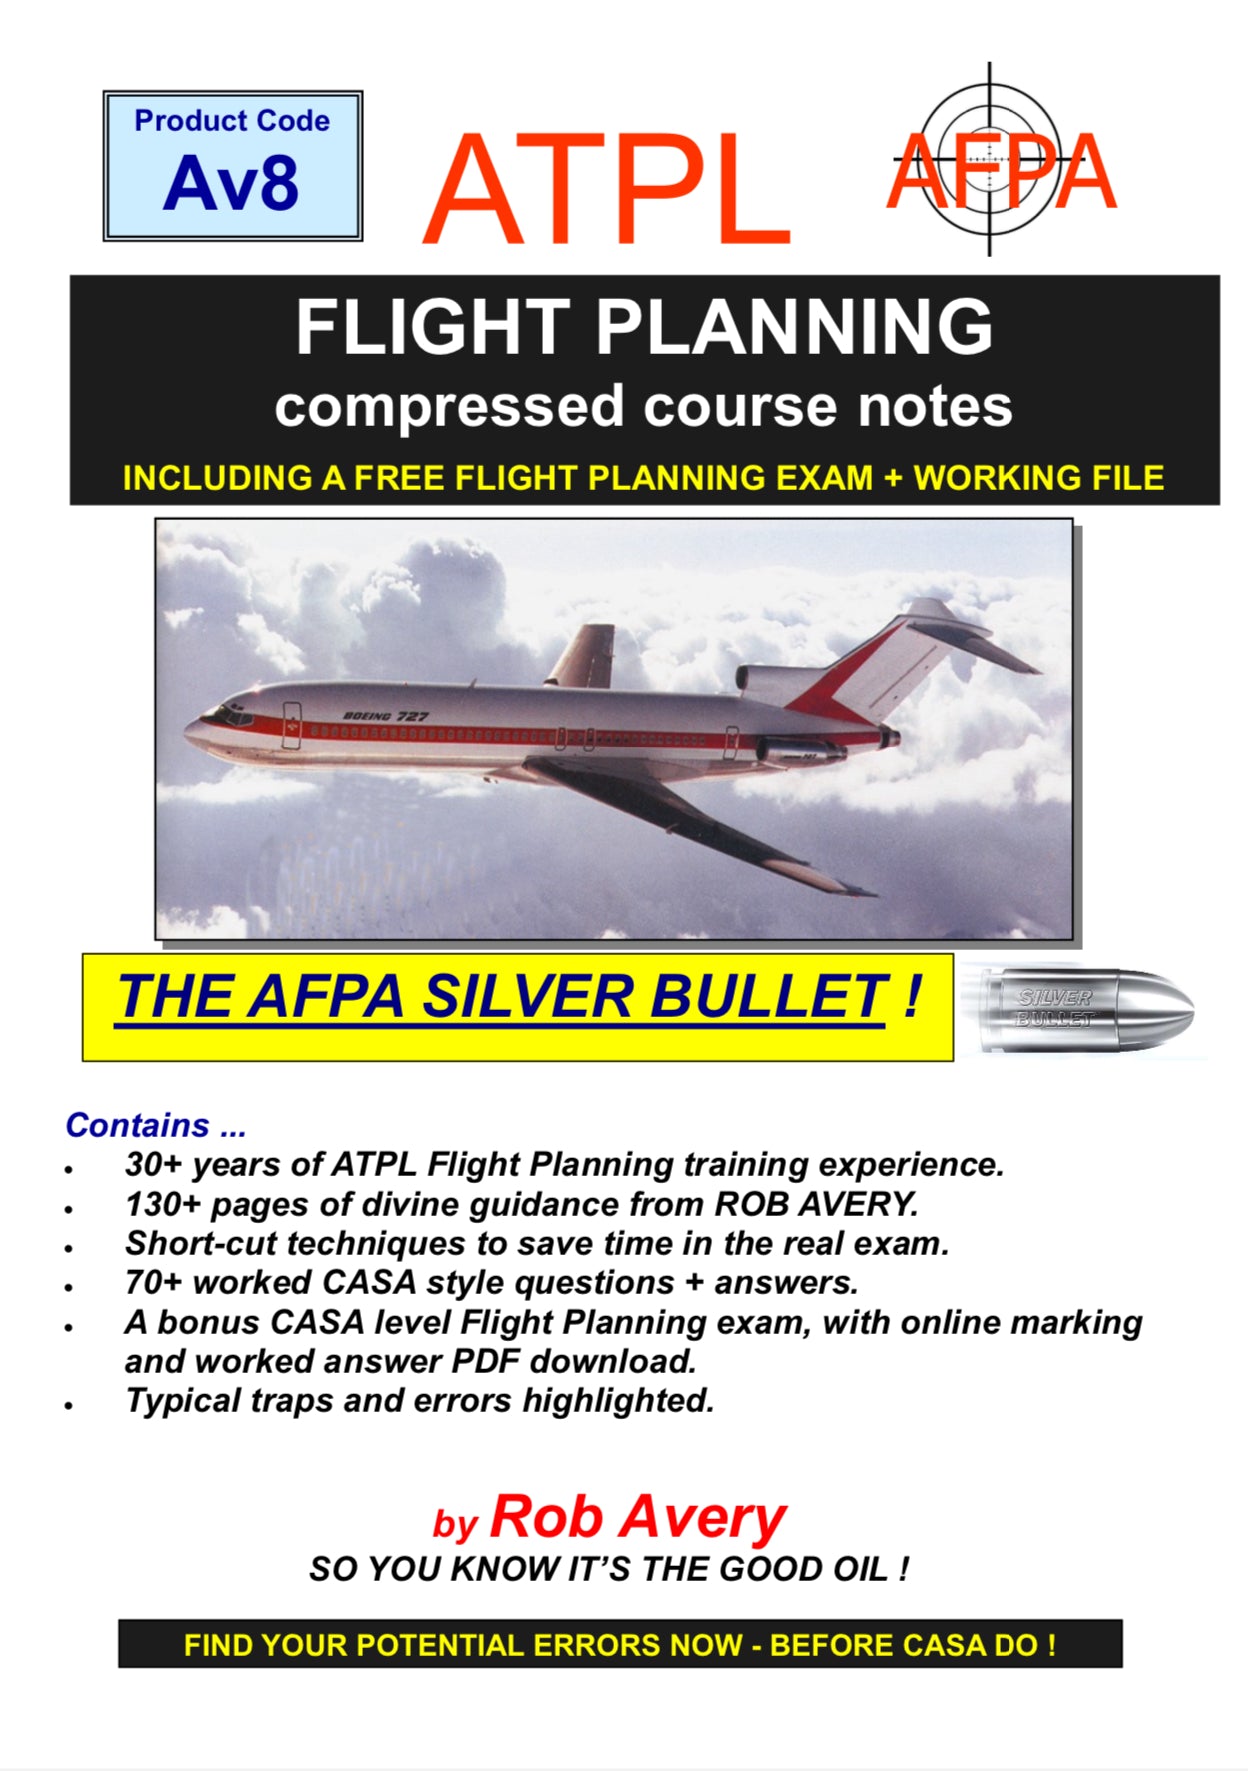 Avfacts by Rob Avery ATPL Flight Planning - AV8